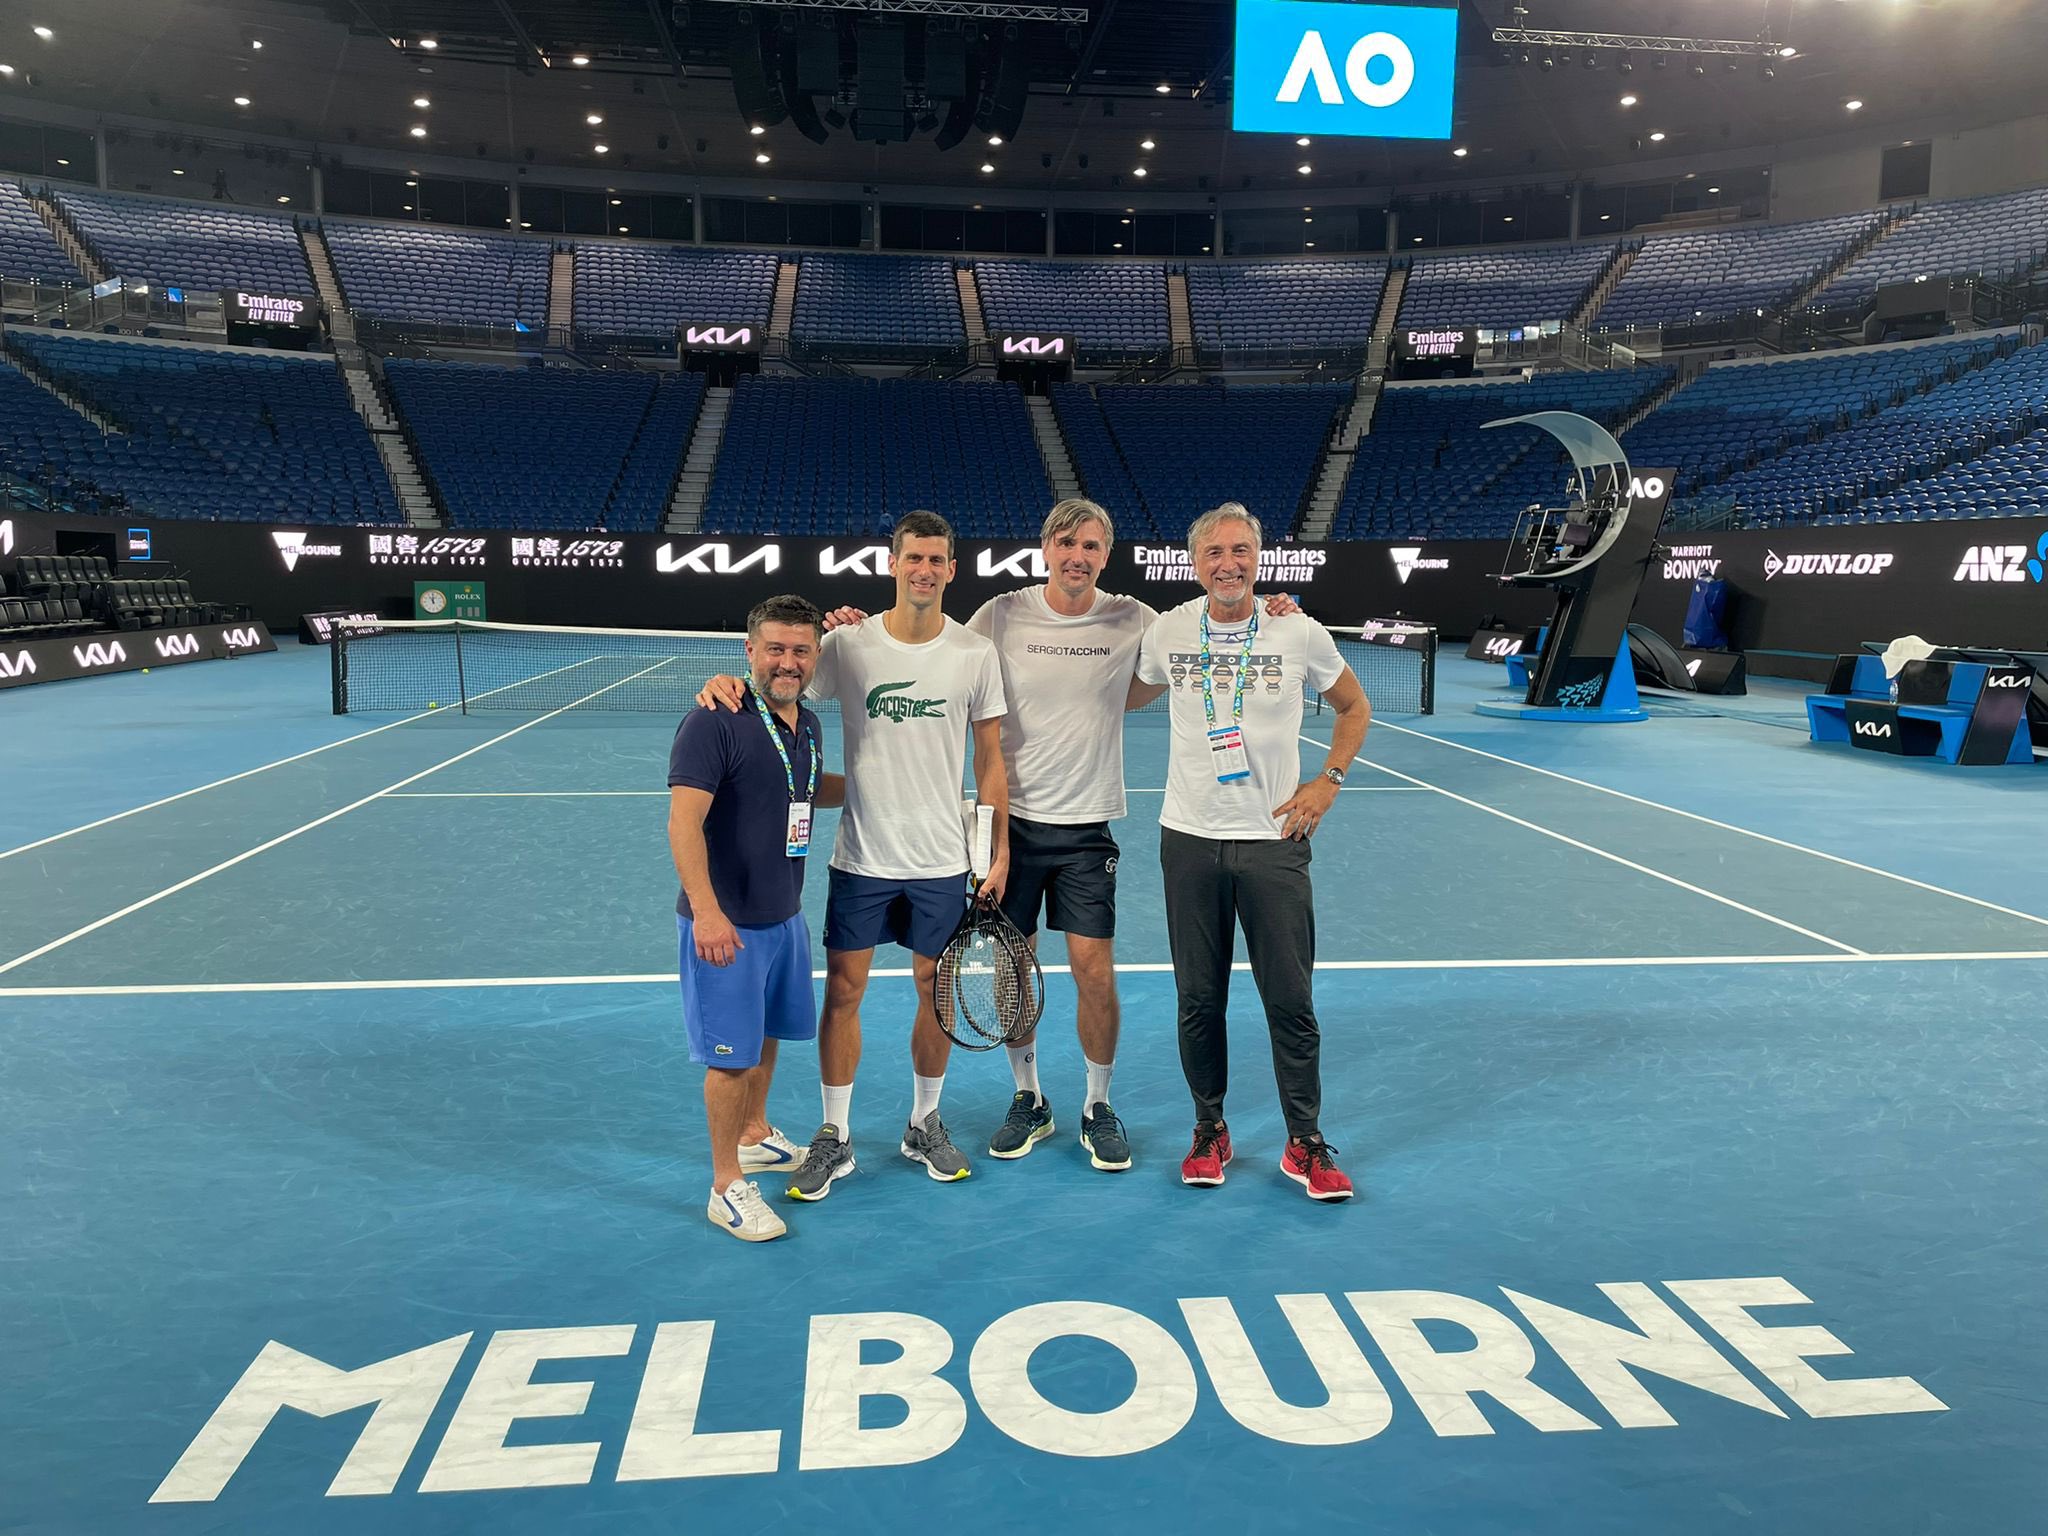 Quiero quedarme e intentar participar en el Open de Australia, declaró Djokovic en Twitter